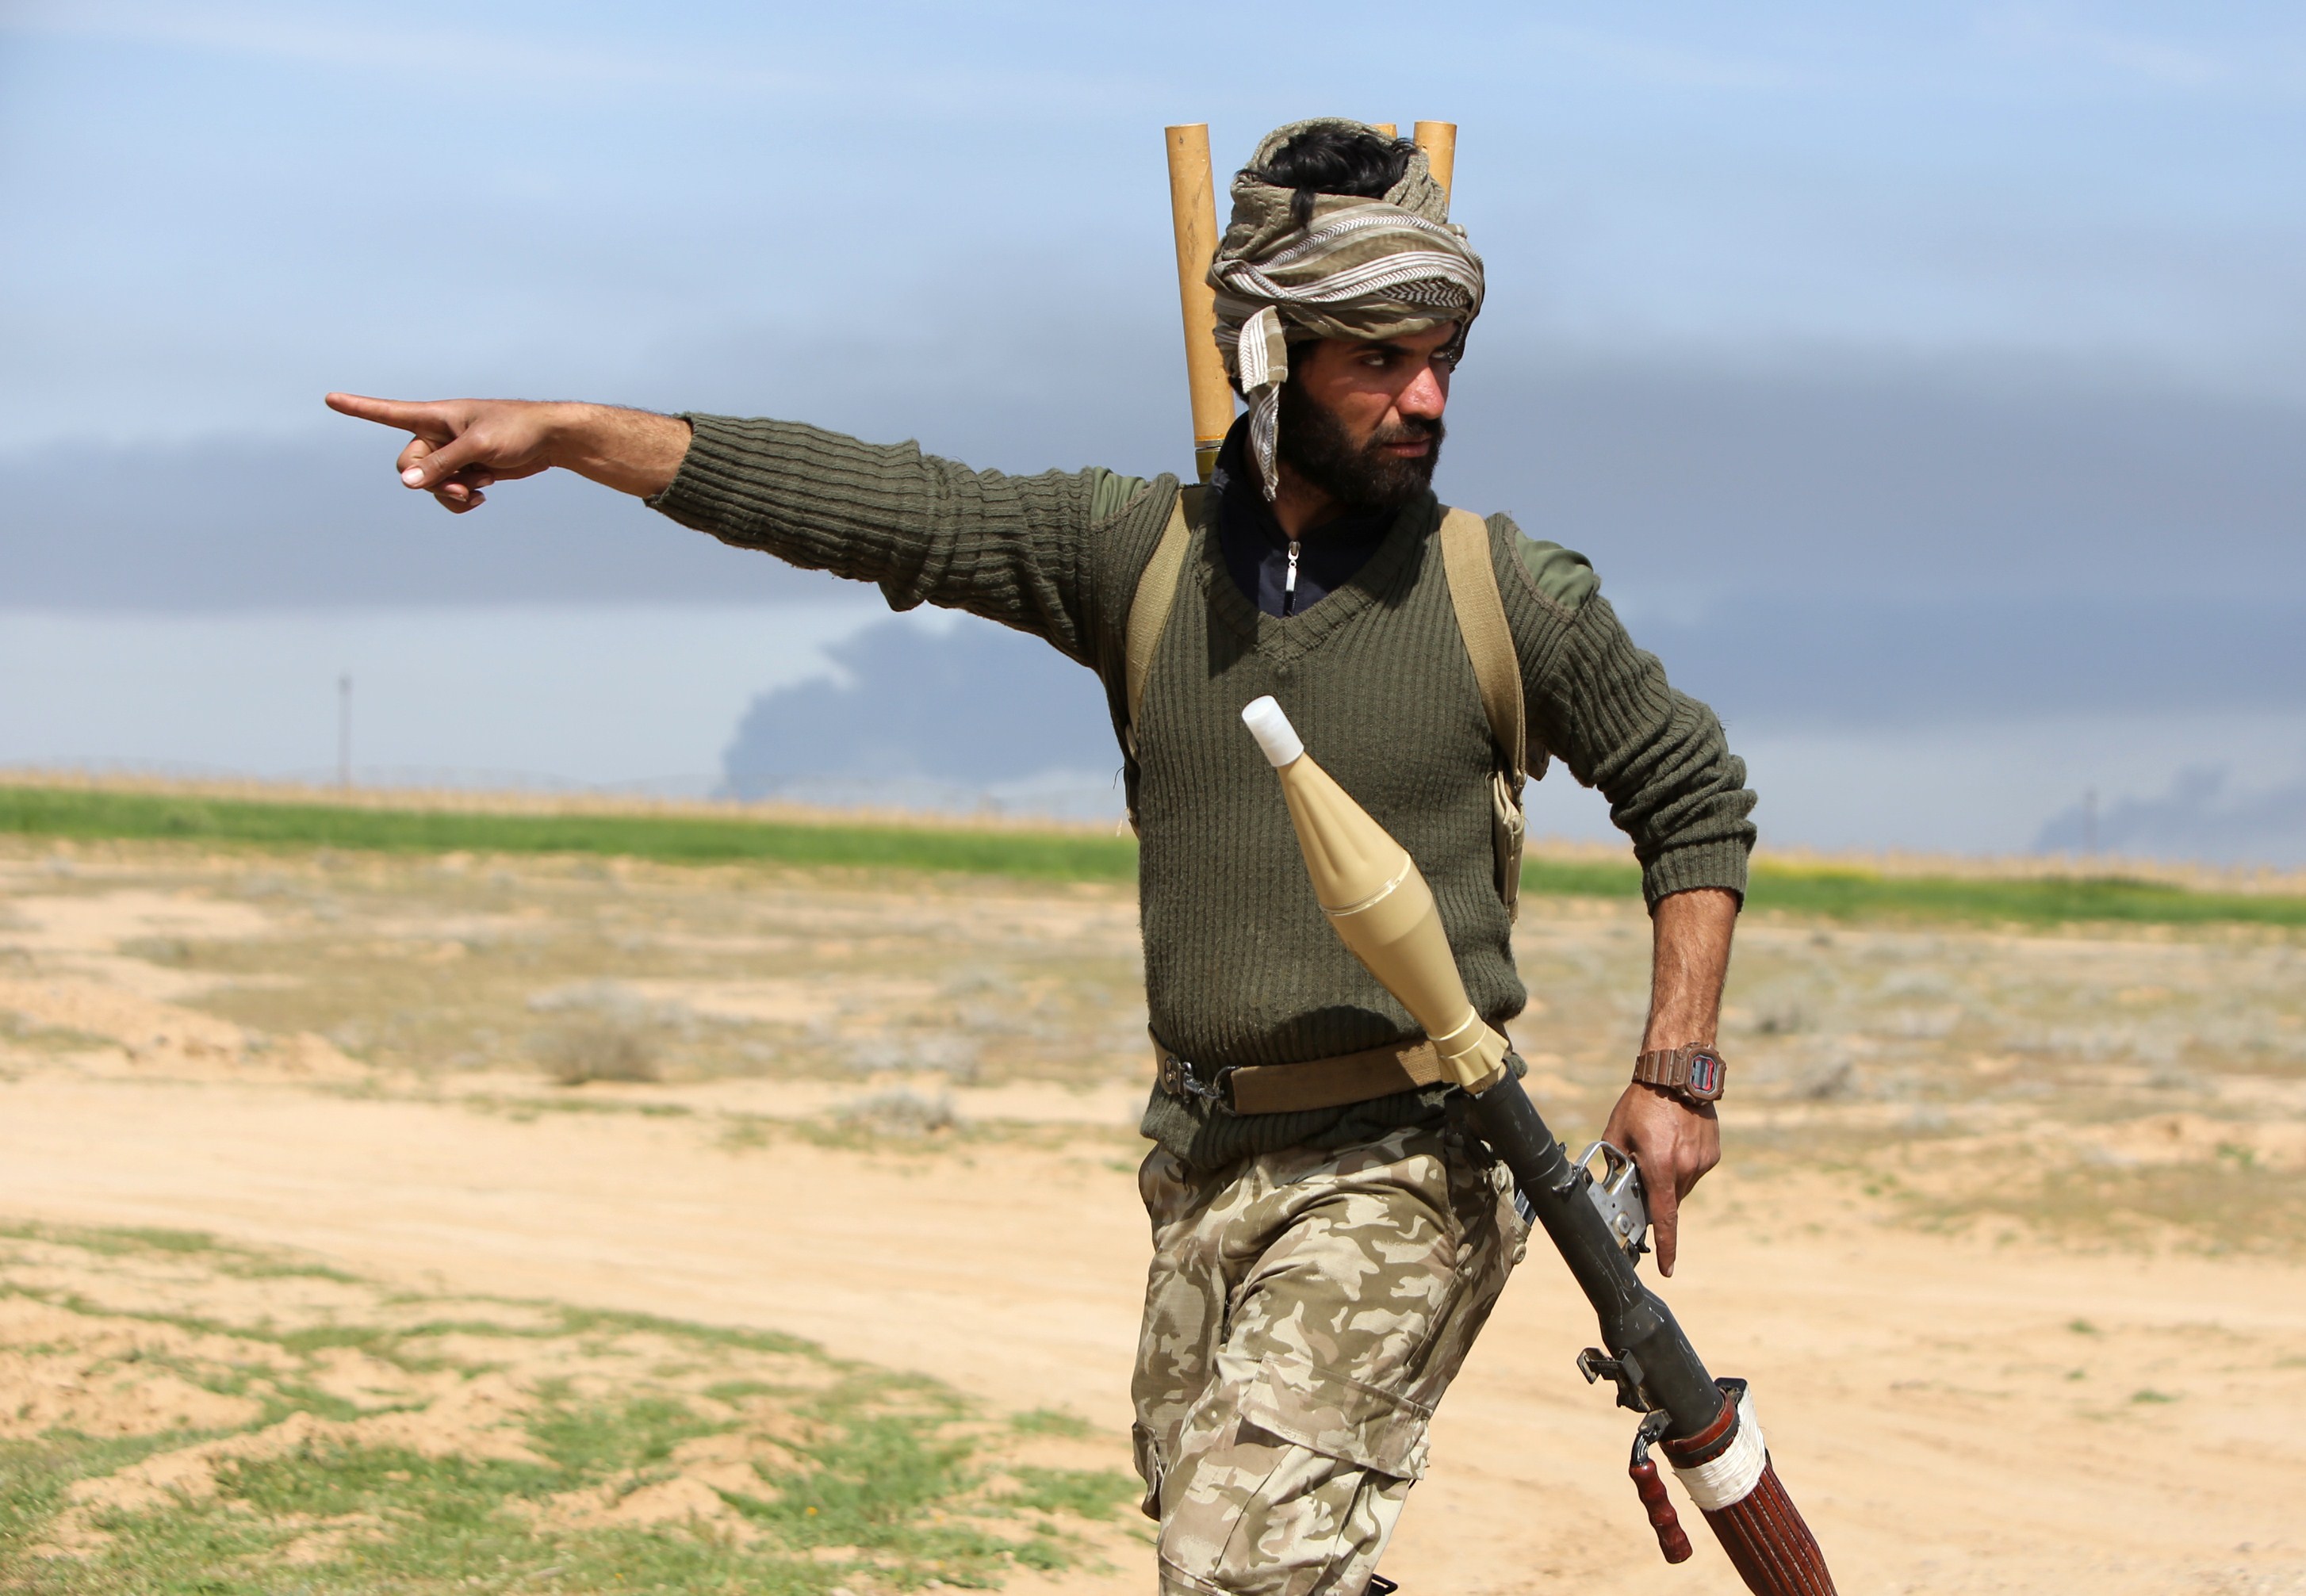 Фото игиловцев. Мусульманский воин. Воин Исламского государства. Араб боец.